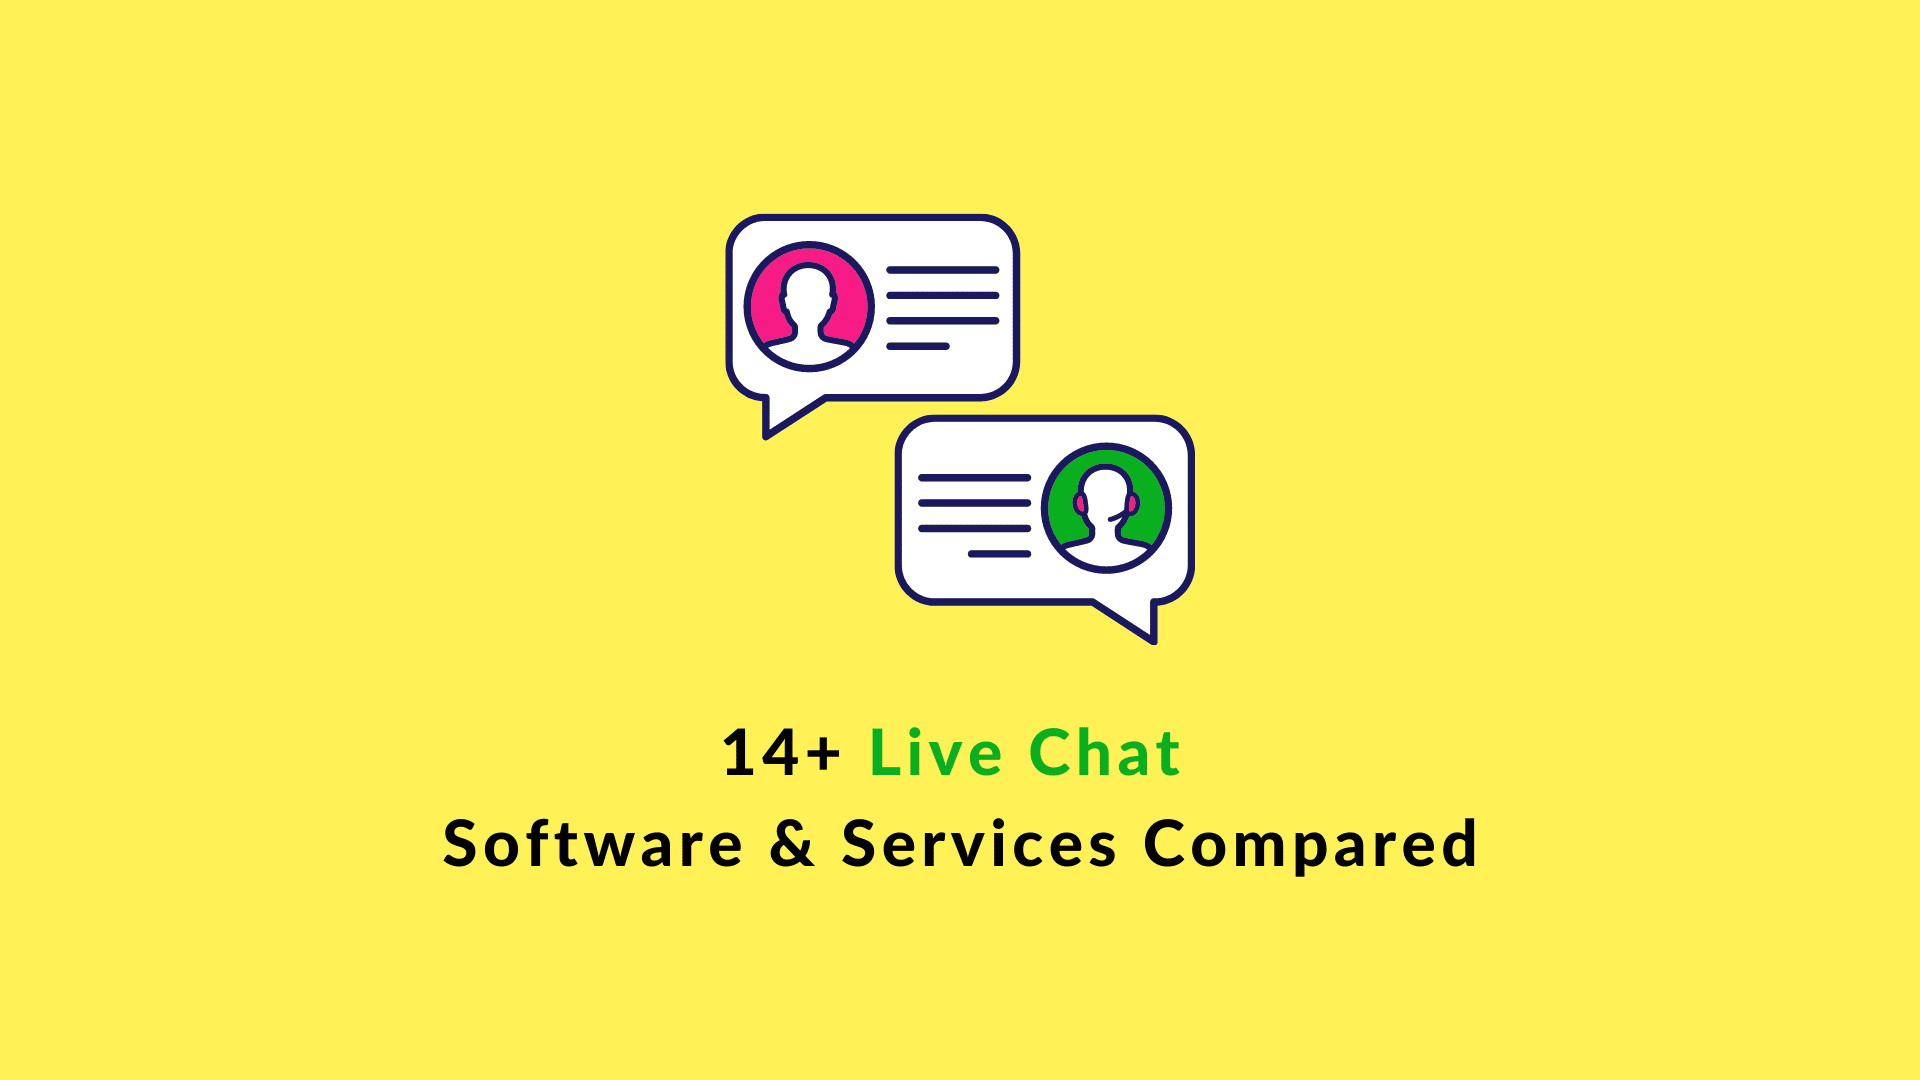 14+ Cele mai bune software, servicii și soluții de chat live comparate